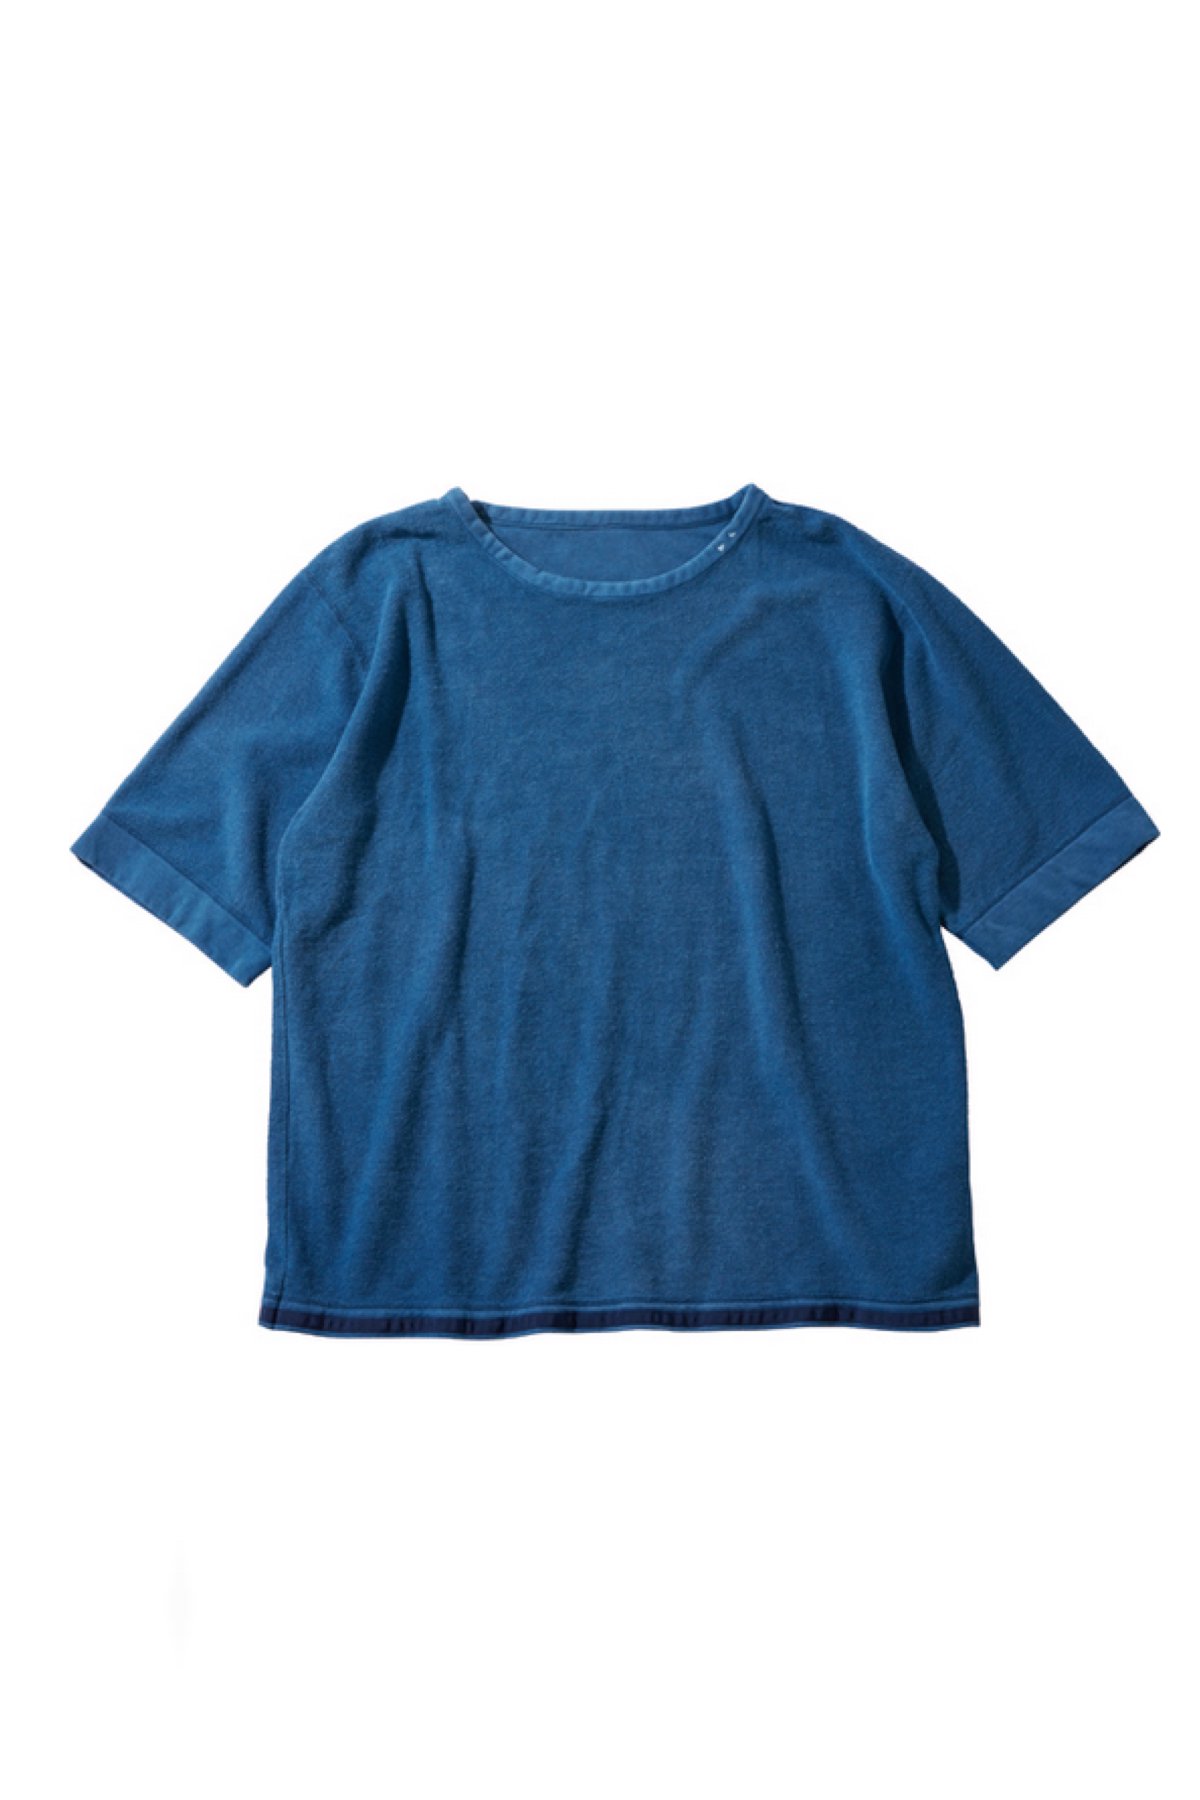 即決 新品 ebony ロングシャツ BC5-80083